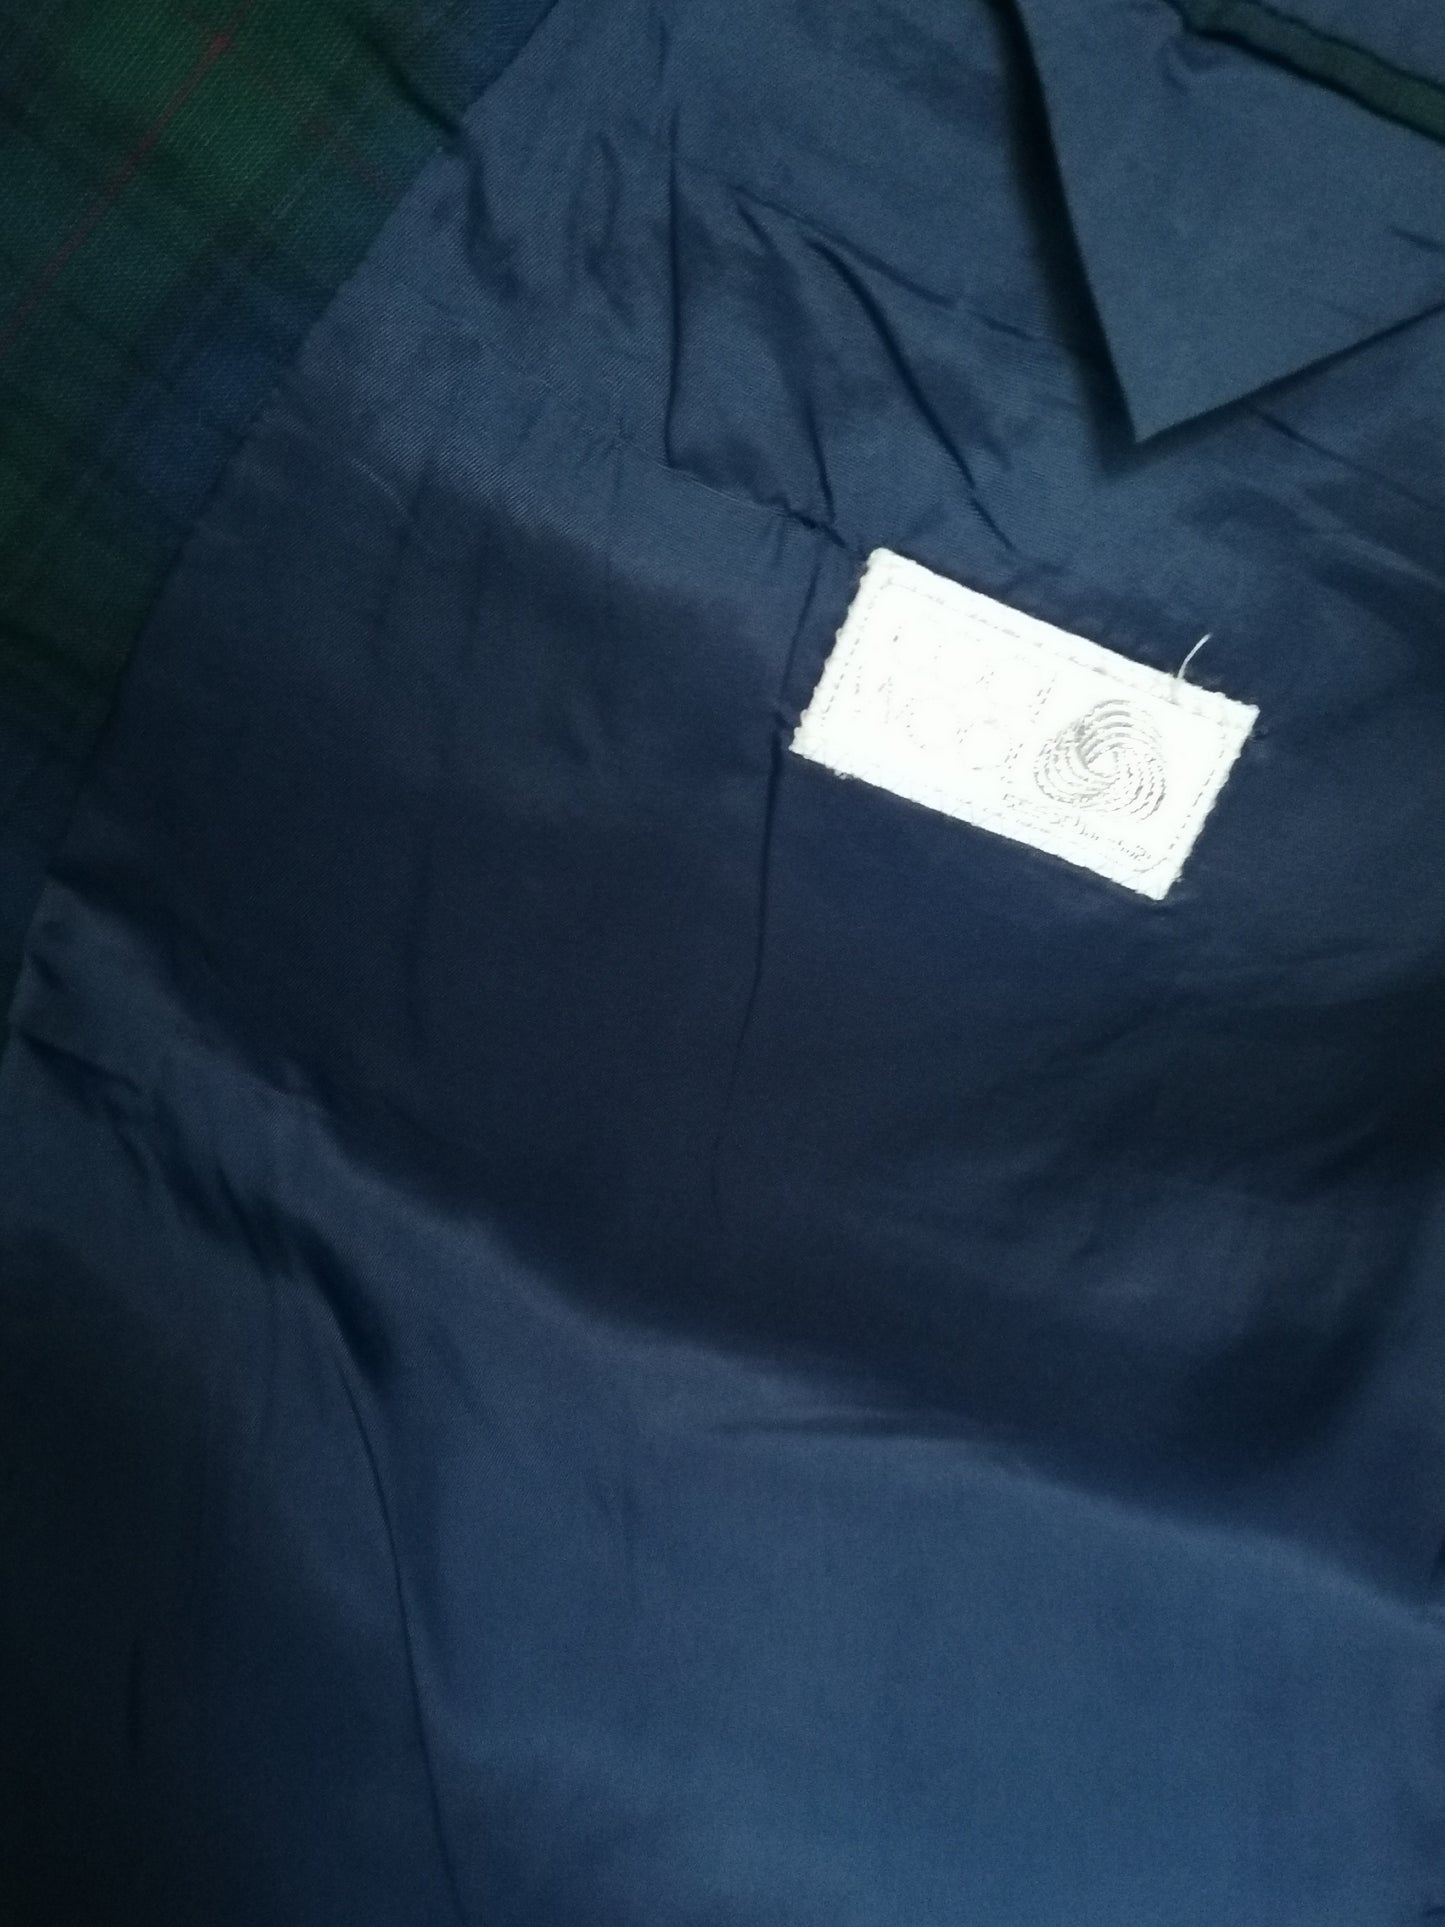 Transportage de laine Pohland / veste à double poitrine. Green Blue Red vérifié. Taille 28 / (56 / xl)